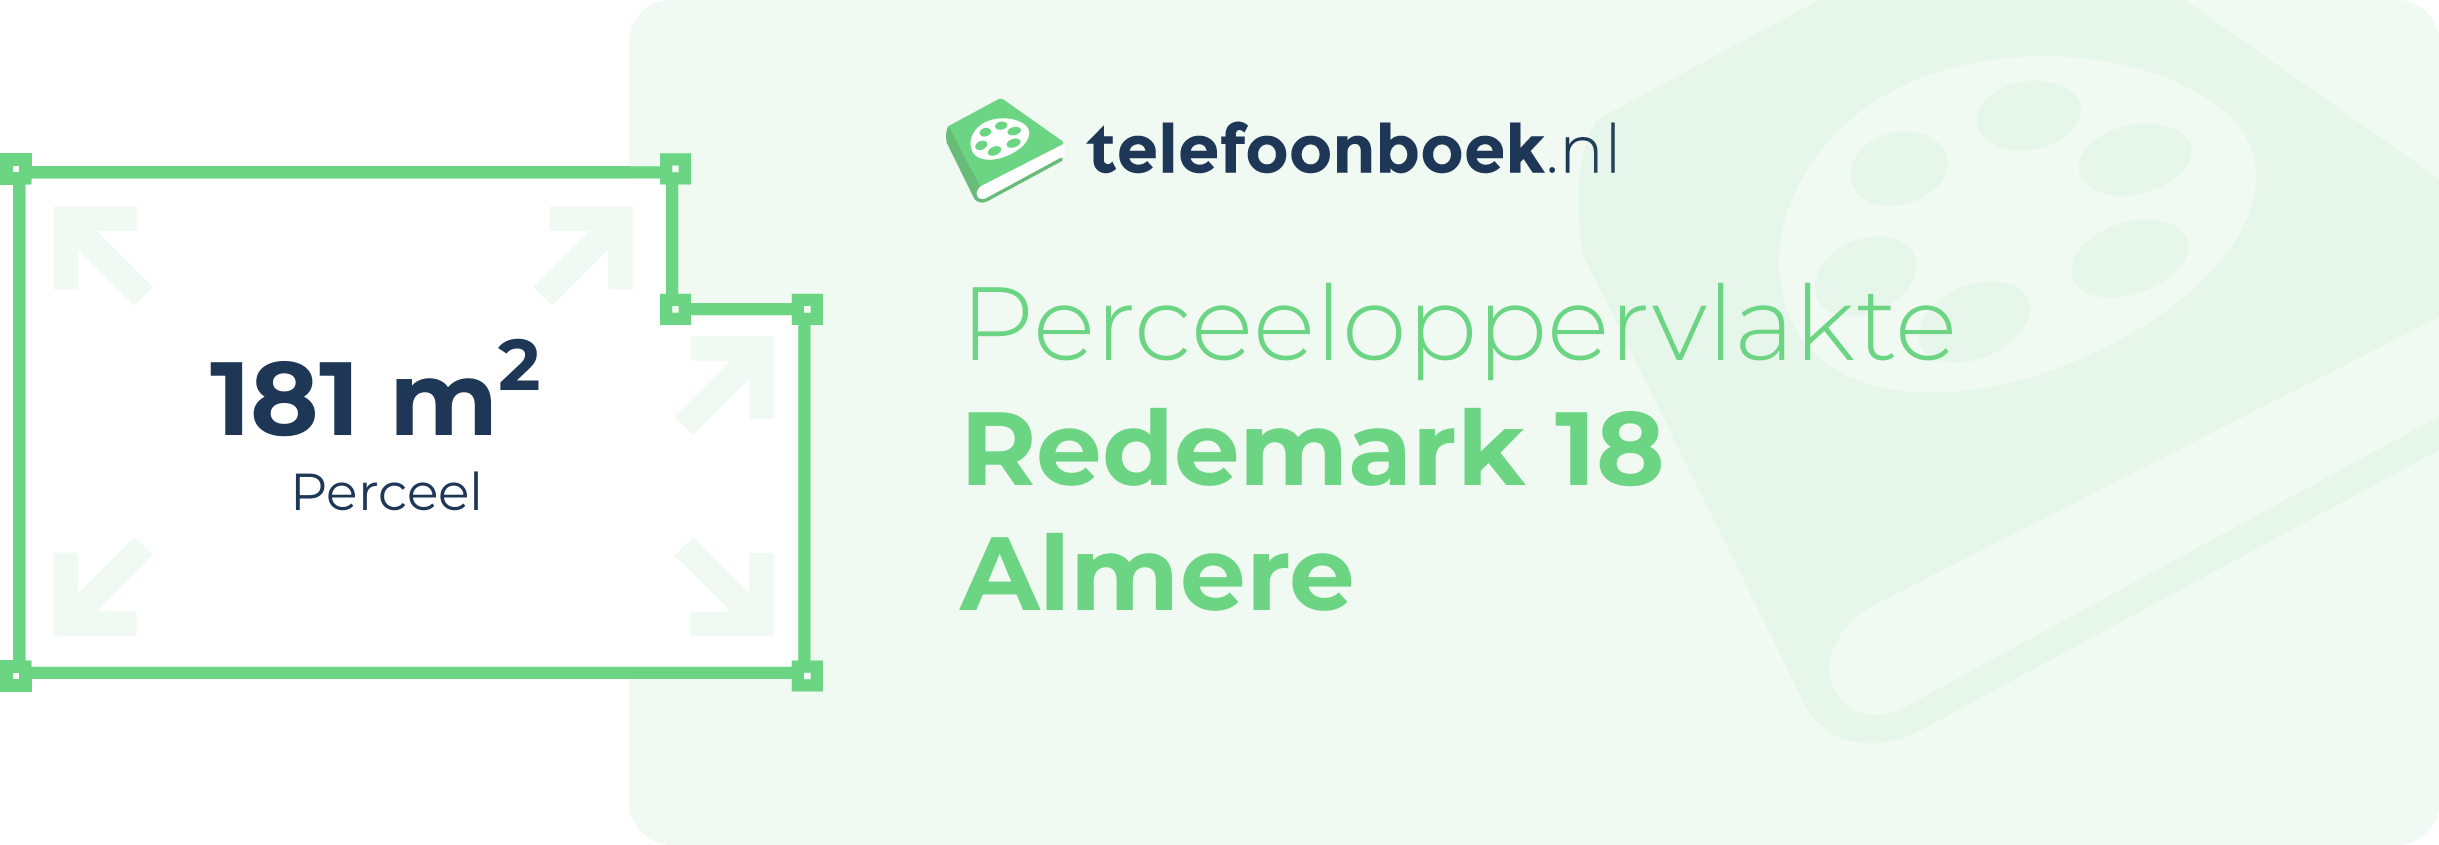 Perceeloppervlakte Redemark 18 Almere